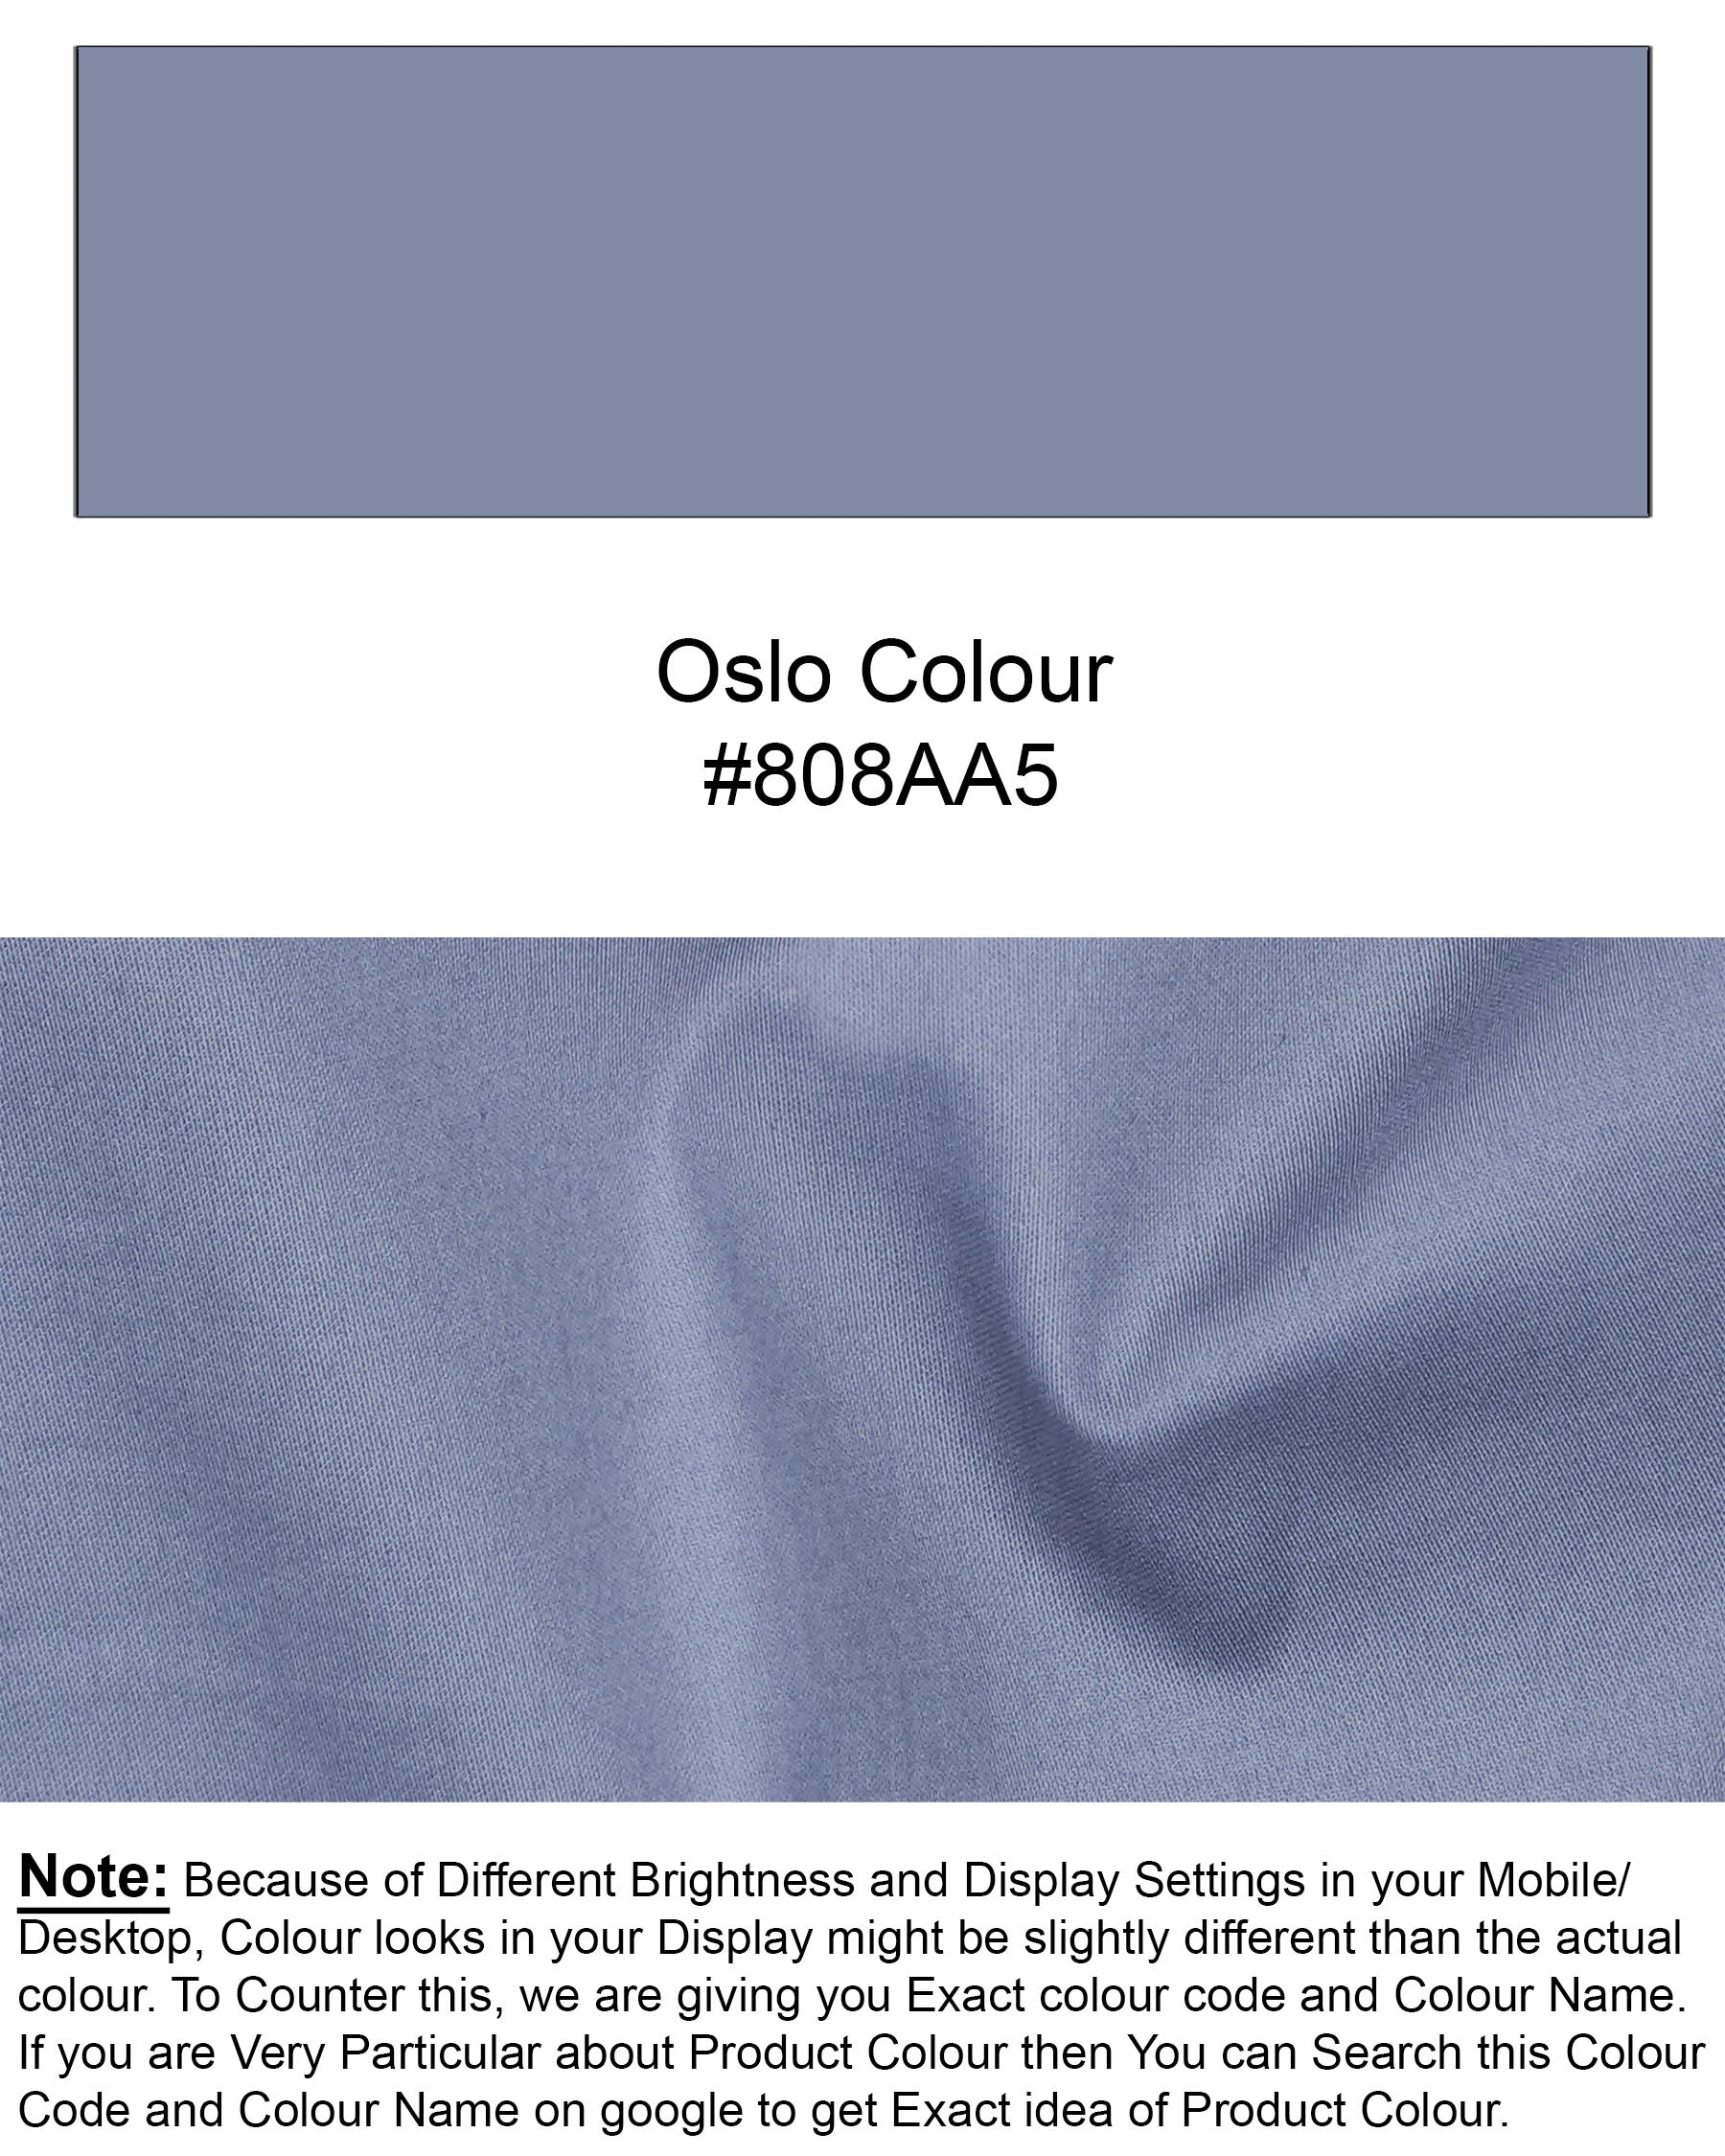 Oslo Blue Super Soft Premium Cotton Shirt 7601-CA-38, 7601-CA-H-38, 7601-CA-39,7601-CA-H-39, 7601-CA-40, 7601-CA-H-40, 7601-CA-42, 7601-CA-H-42, 7601-CA-44, 7601-CA-H-44, 7601-CA-46, 7601-CA-H-46, 7601-CA-48, 7601-CA-H-48, 7601-CA-50, 7601-CA-H-50, 7601-CA-52, 7601-CA-H-52